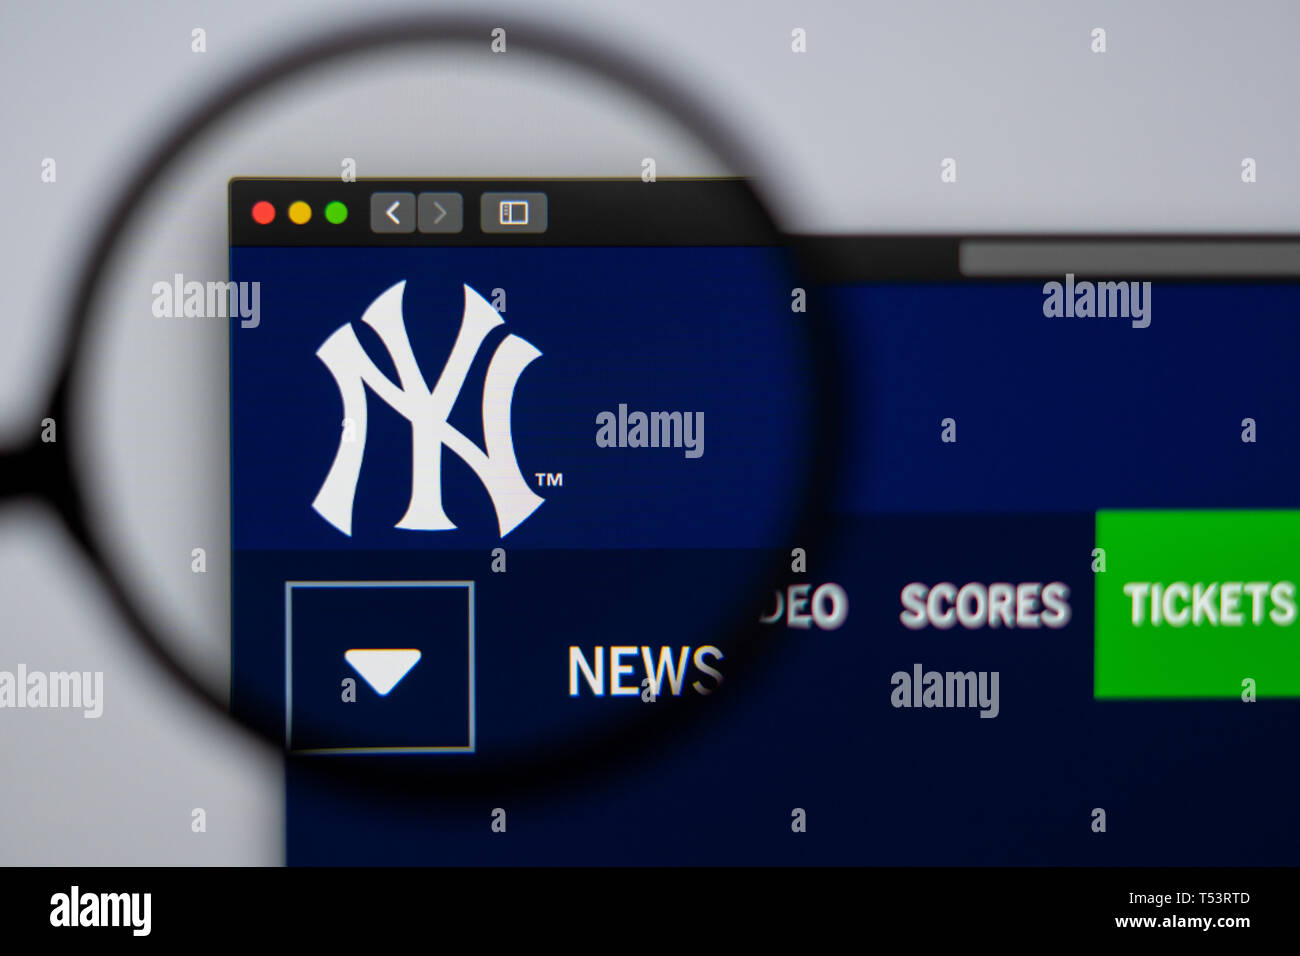 L'équipe de baseball des Yankees de New York d'accueil du site. Close up de logo pour l'équipe. Peut être utilisé comme illustration pour les médias ou d'autres sites web Banque D'Images